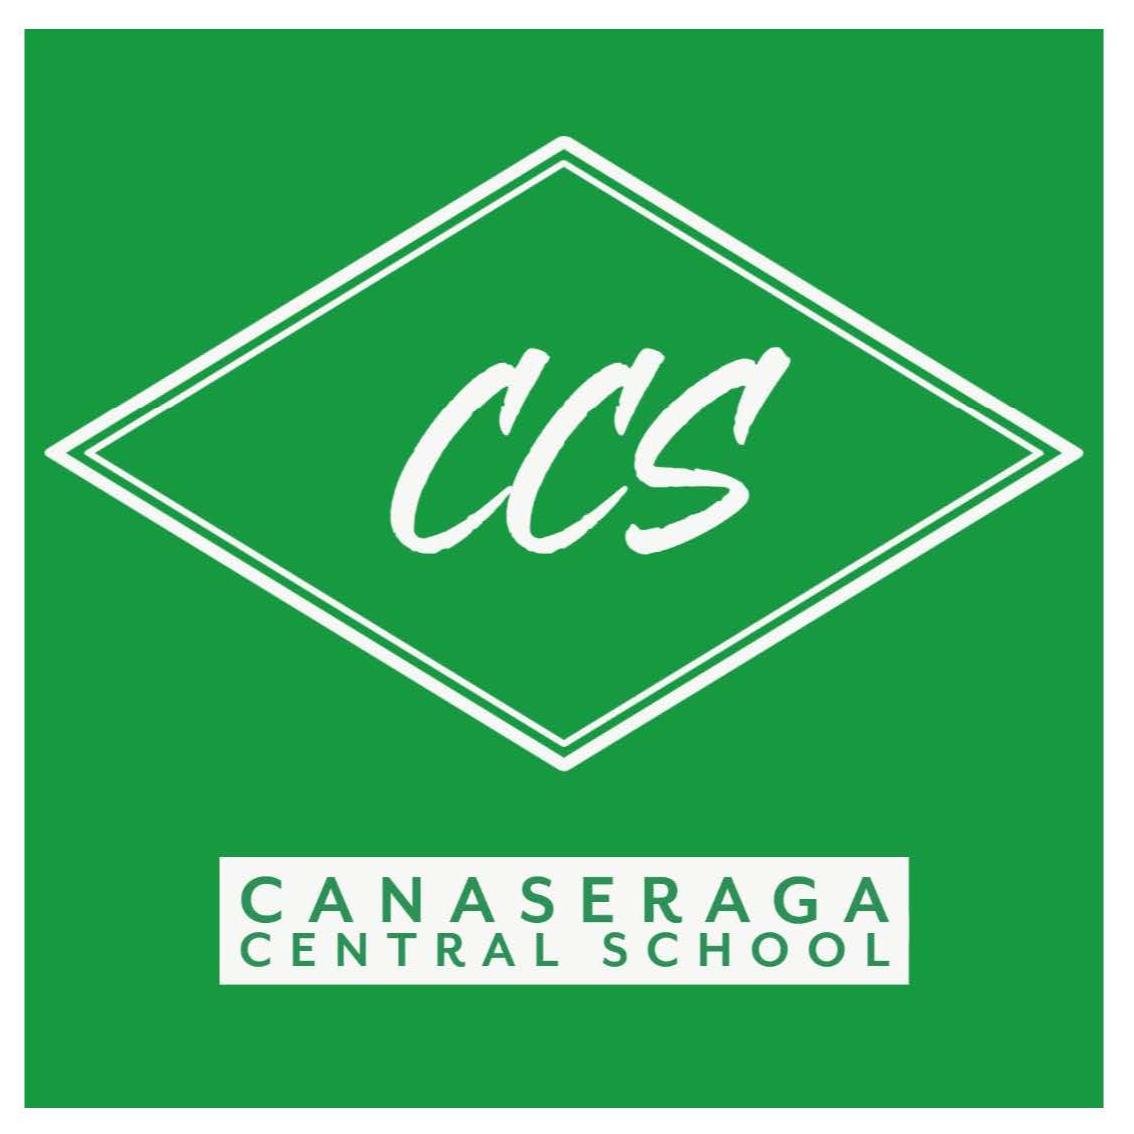 Canaseraga Central School